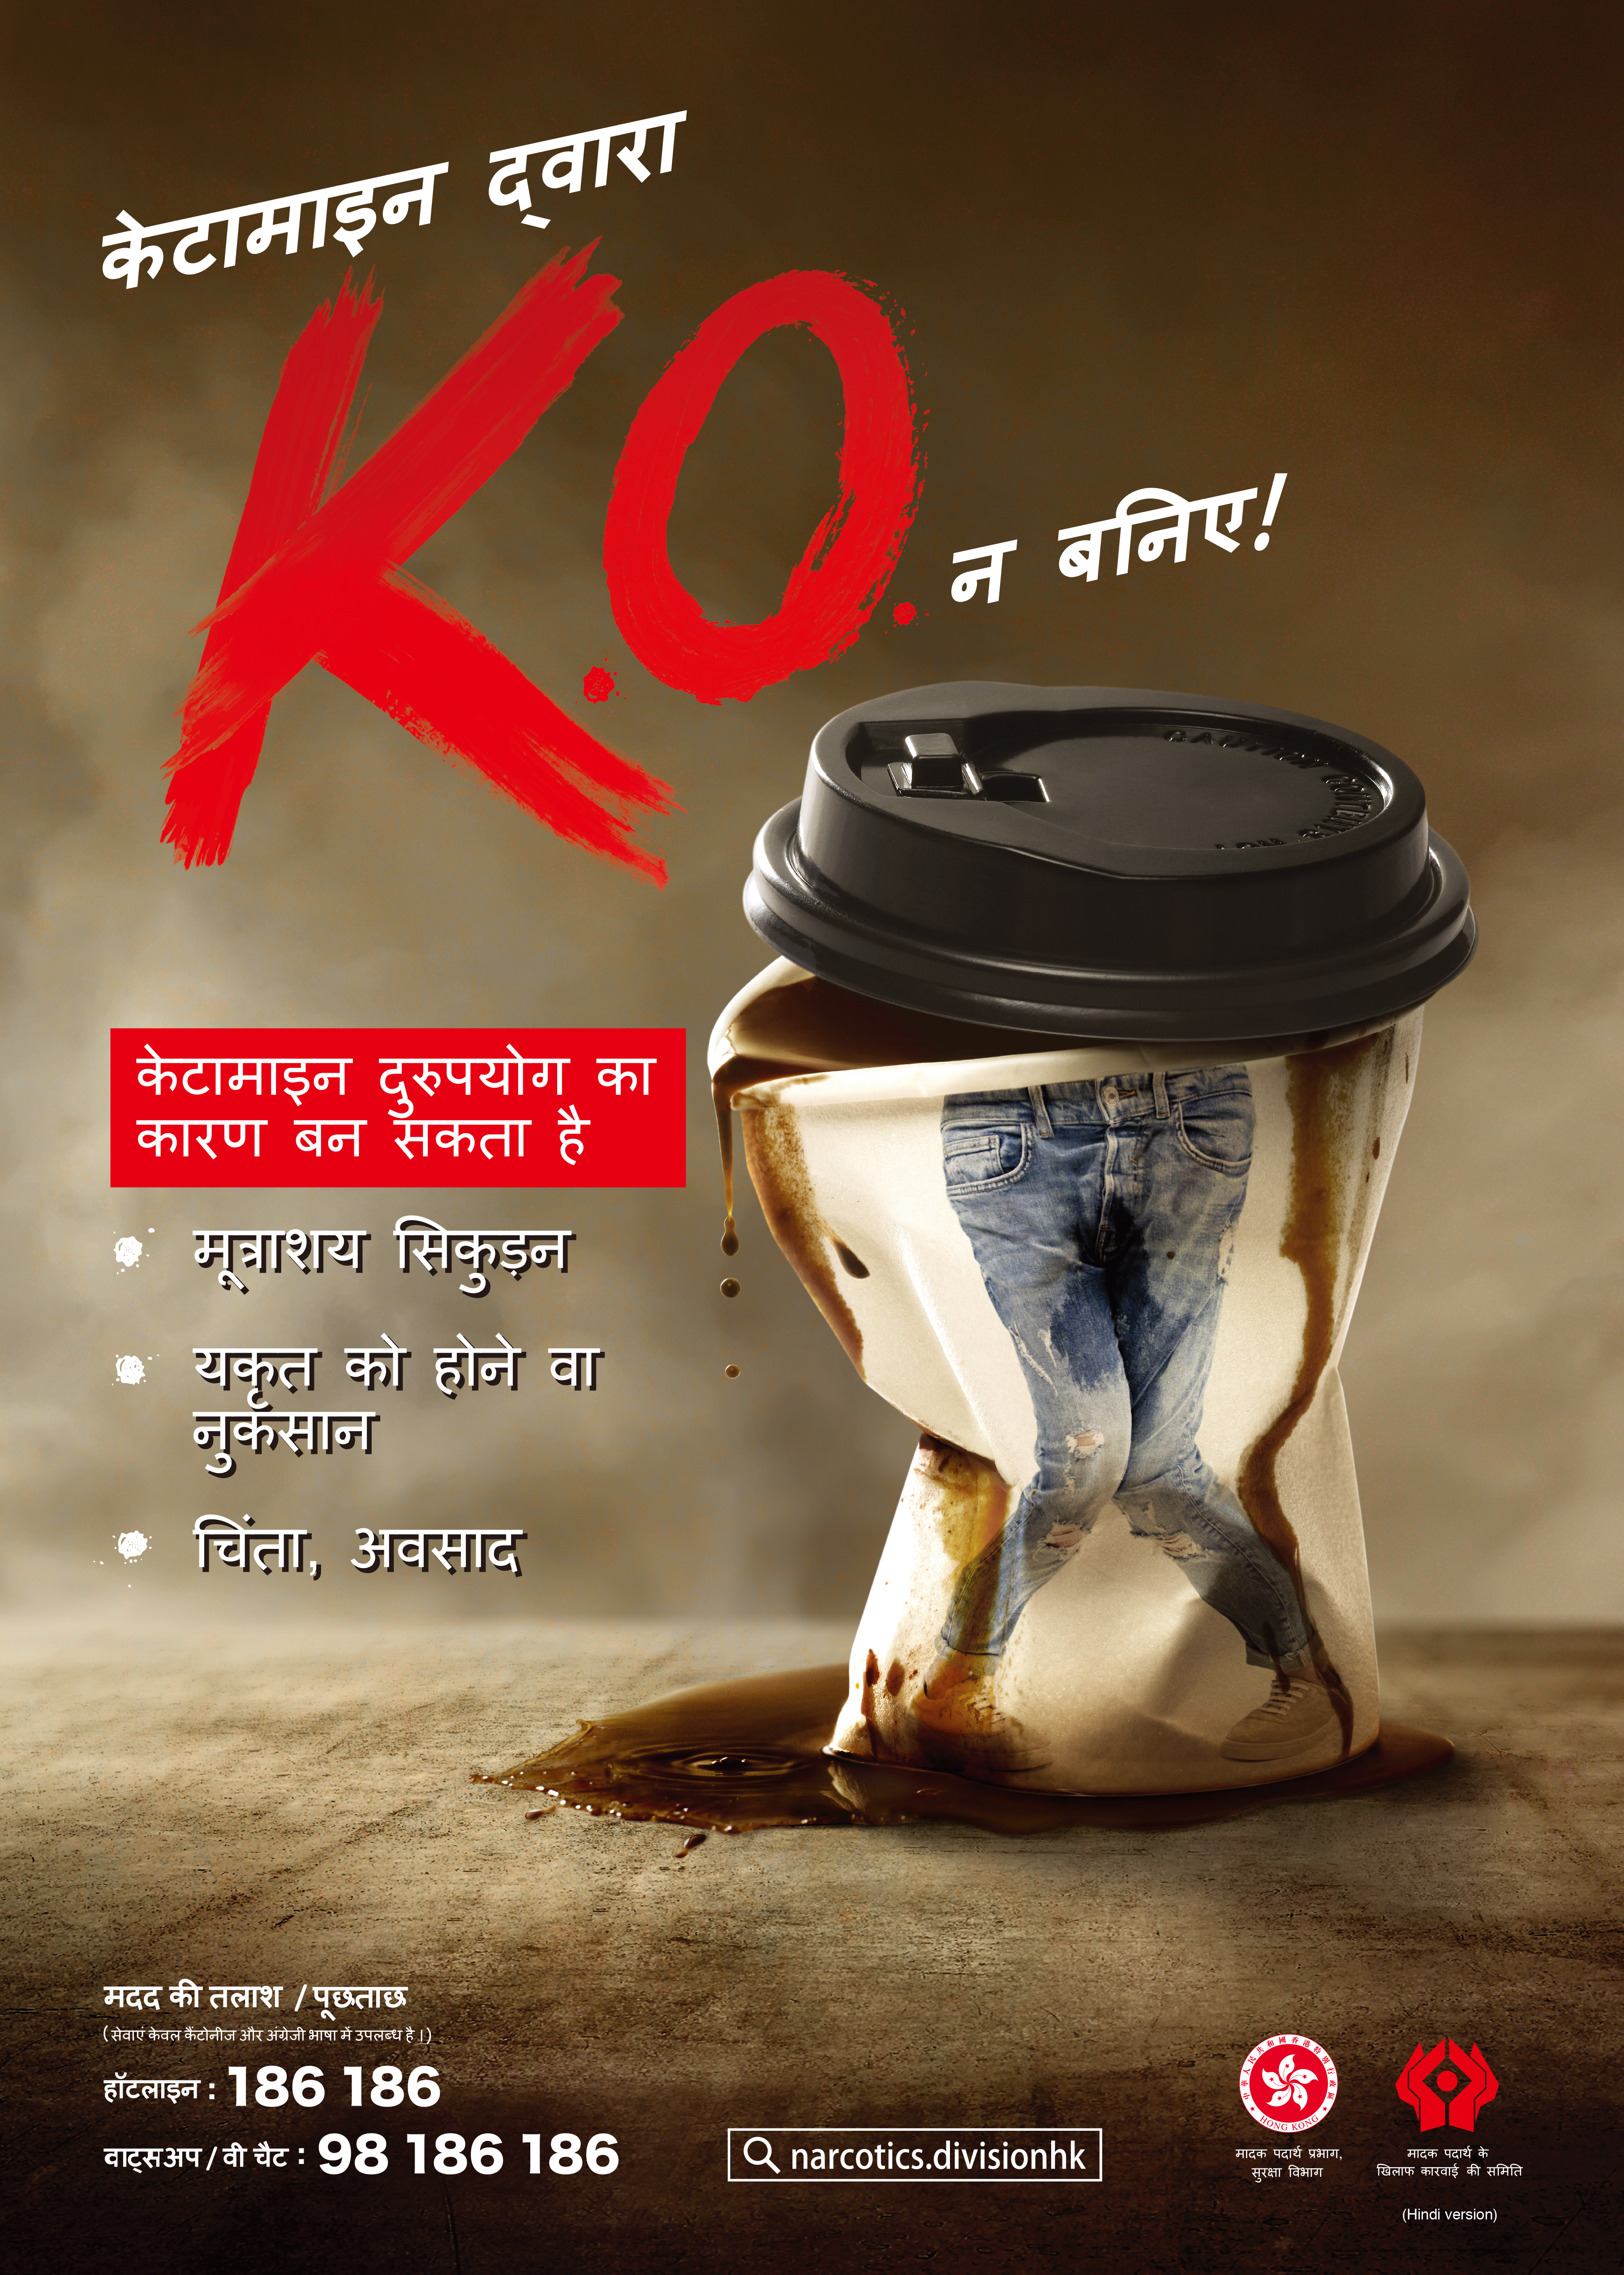 禁毒海报「咪畀K仔K.O.你！」－ 印度文版本